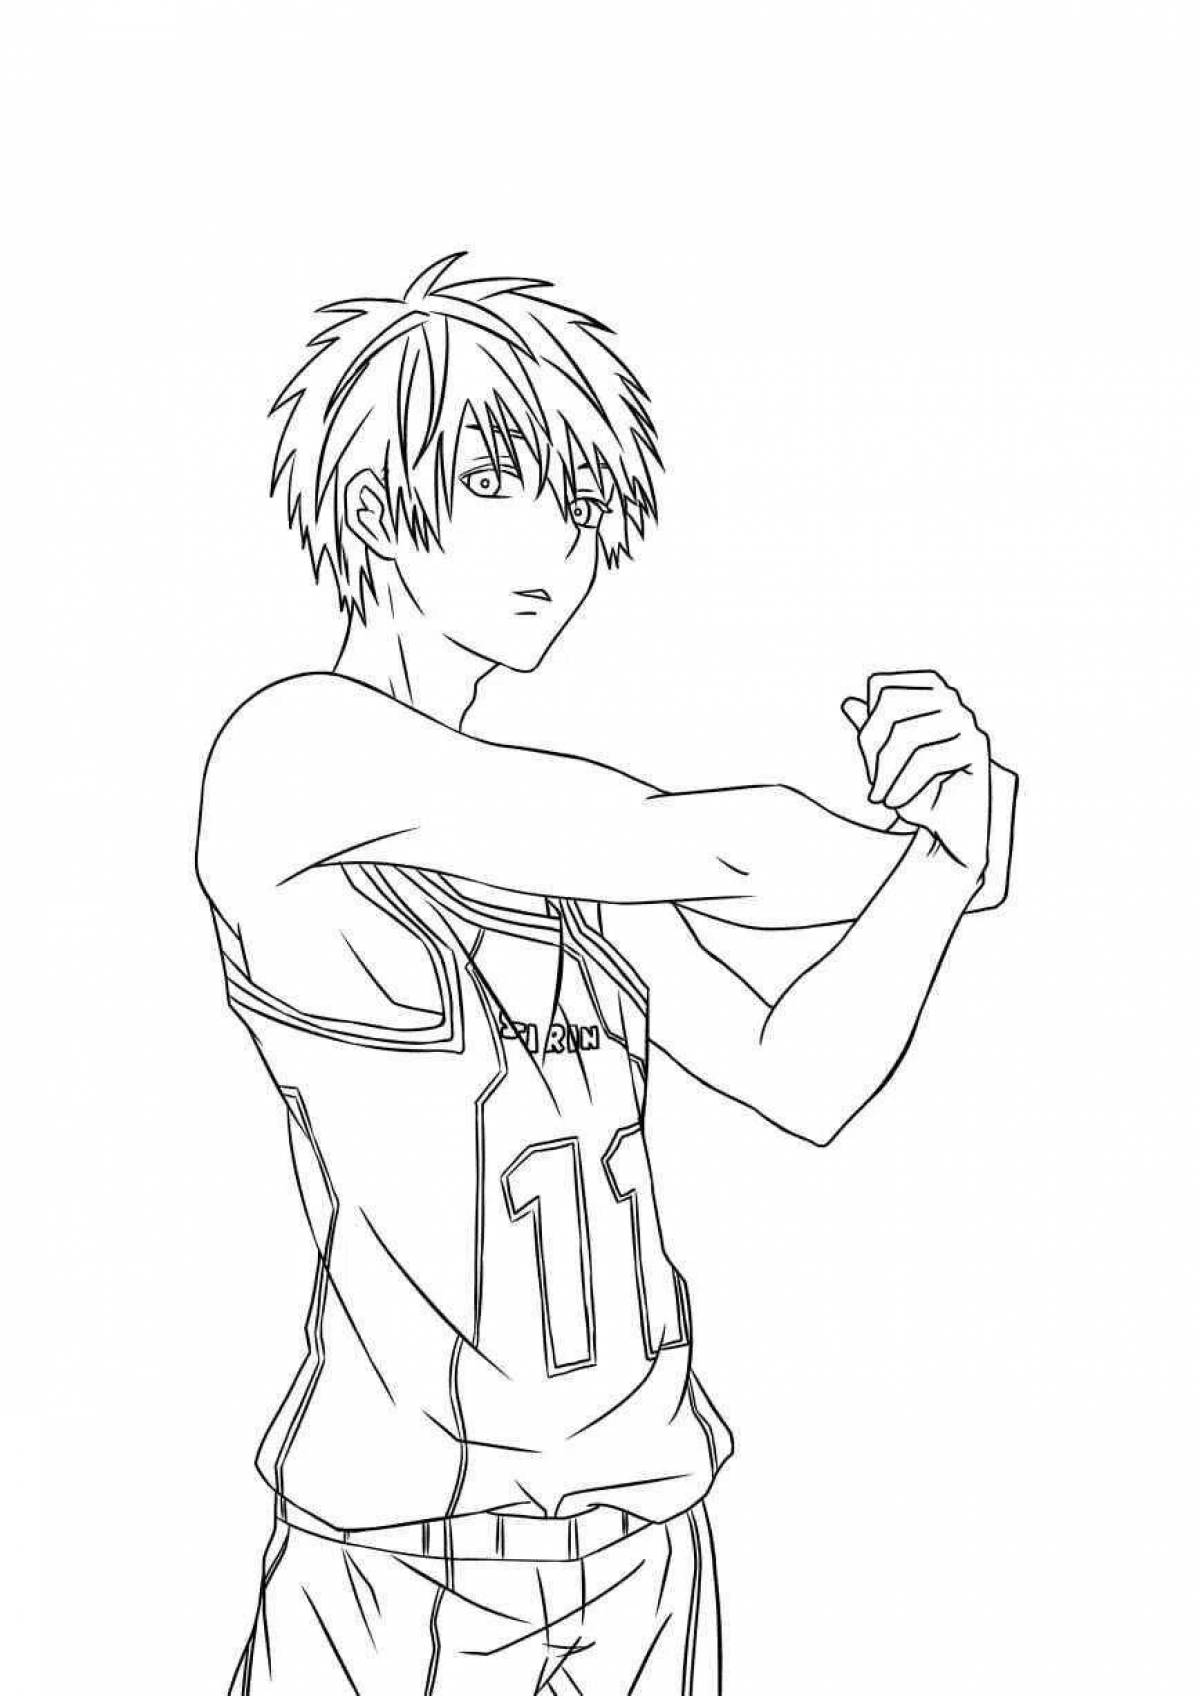 Magic kuroko anime basketball coloring page